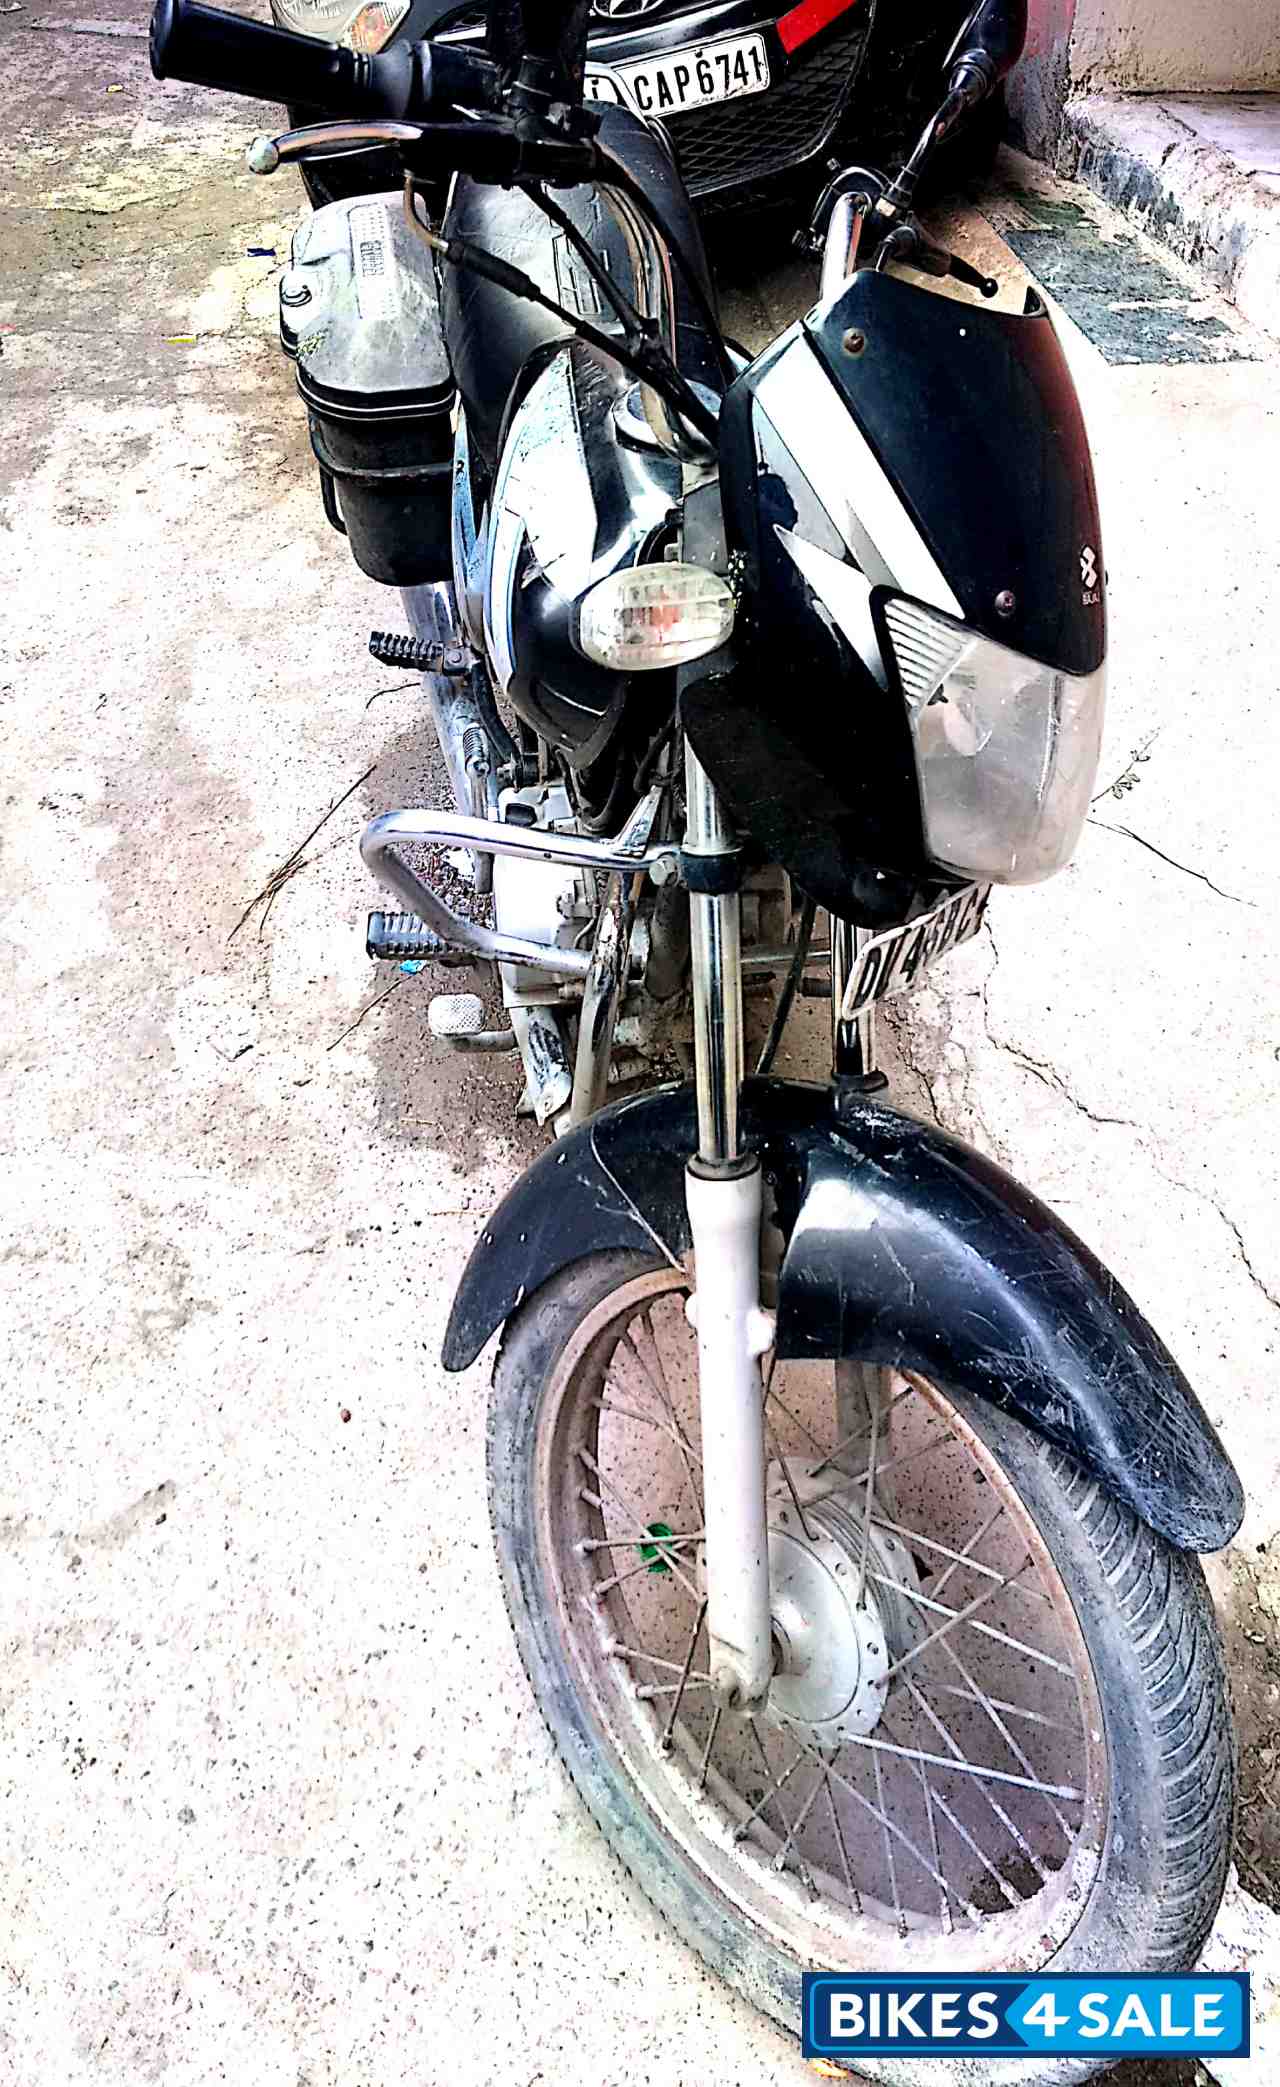 Used 06 Model Bajaj Ct 100 For Sale In New Delhi Id 7868 Bikes4sale